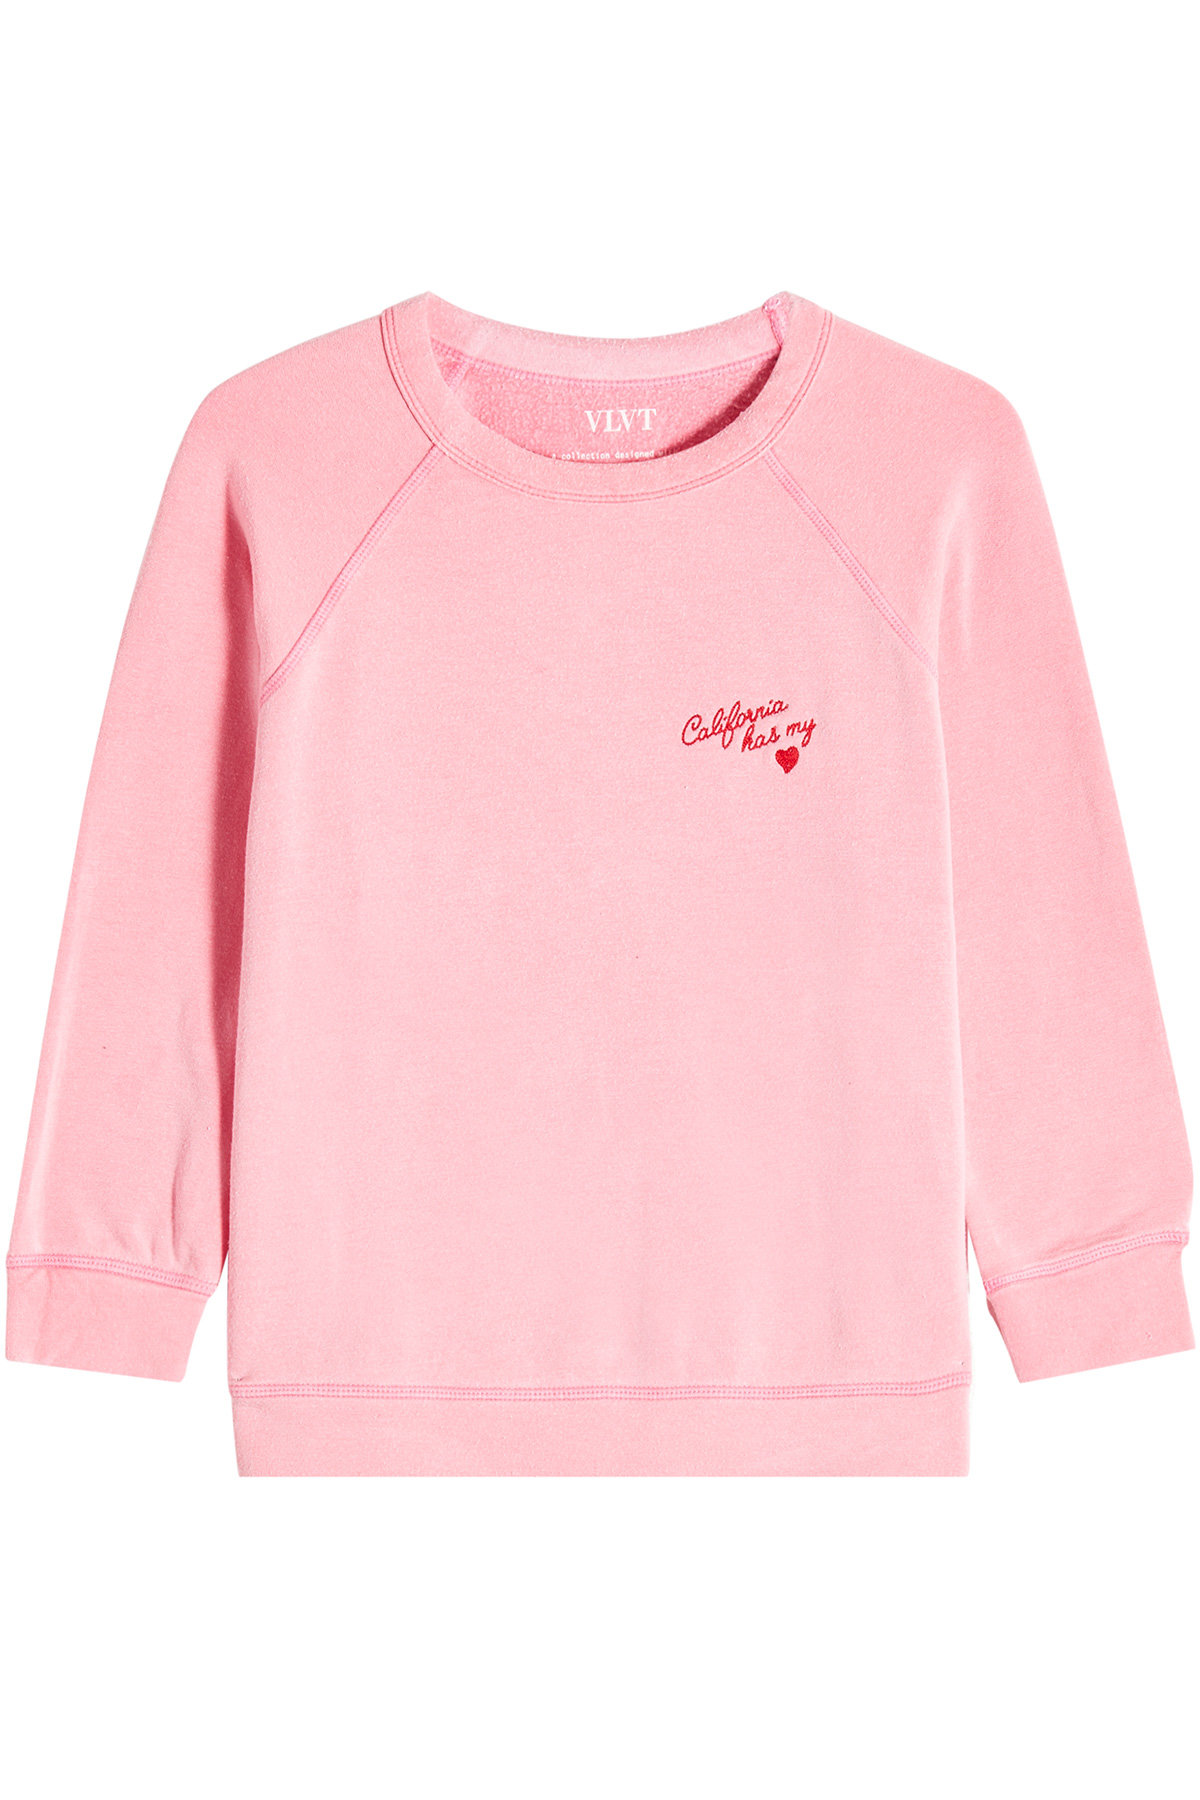 Velvet - Marleigh Sweatshirt with Cotton